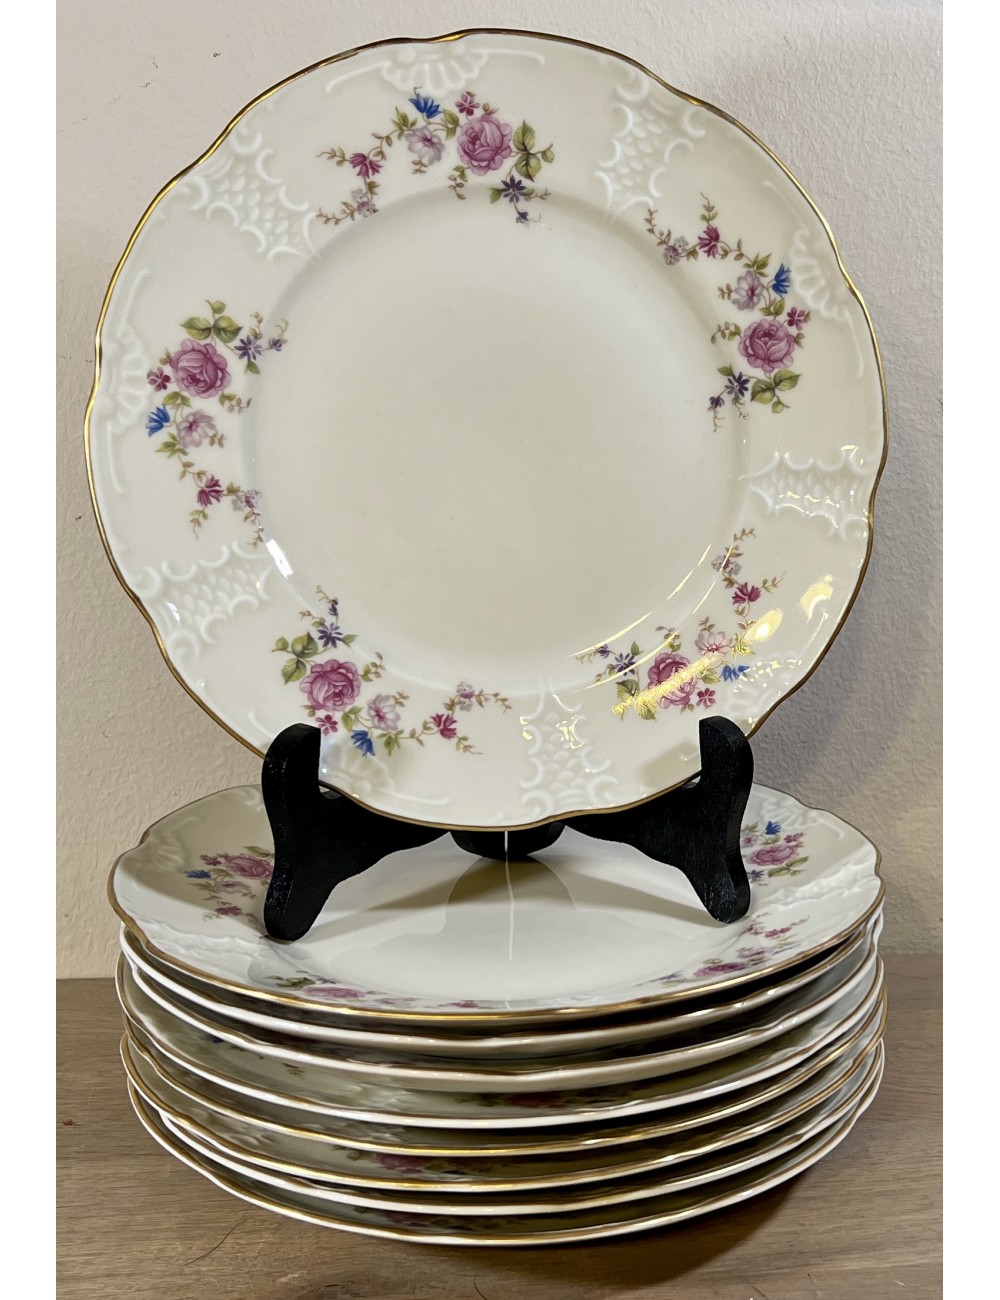 Ontbijtbord / Dessertbord - Mosa - décor in blauw/roze bloemen